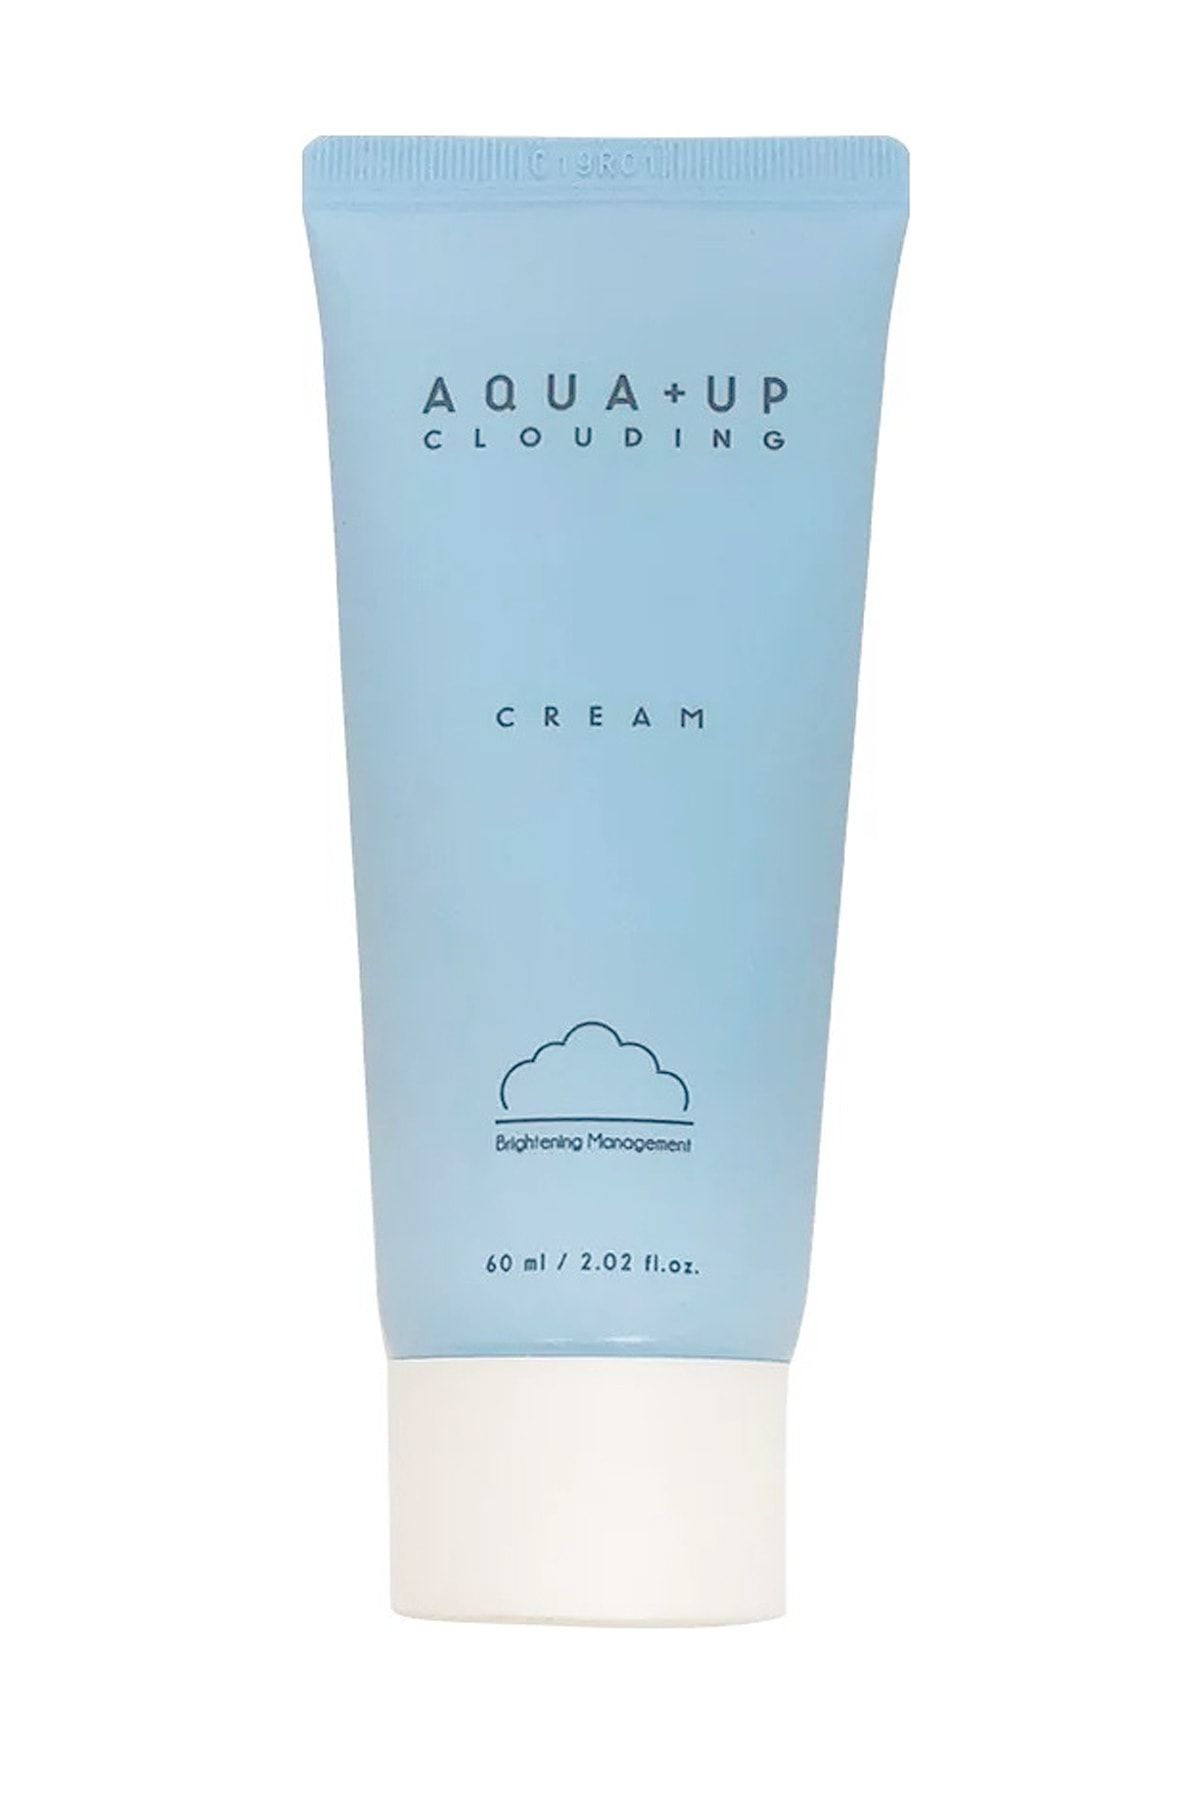 Missha Aydınlatıcı Ve Nemlendirici Bakım Kremi 60ml APIEU Aqua Up Clouding Cream